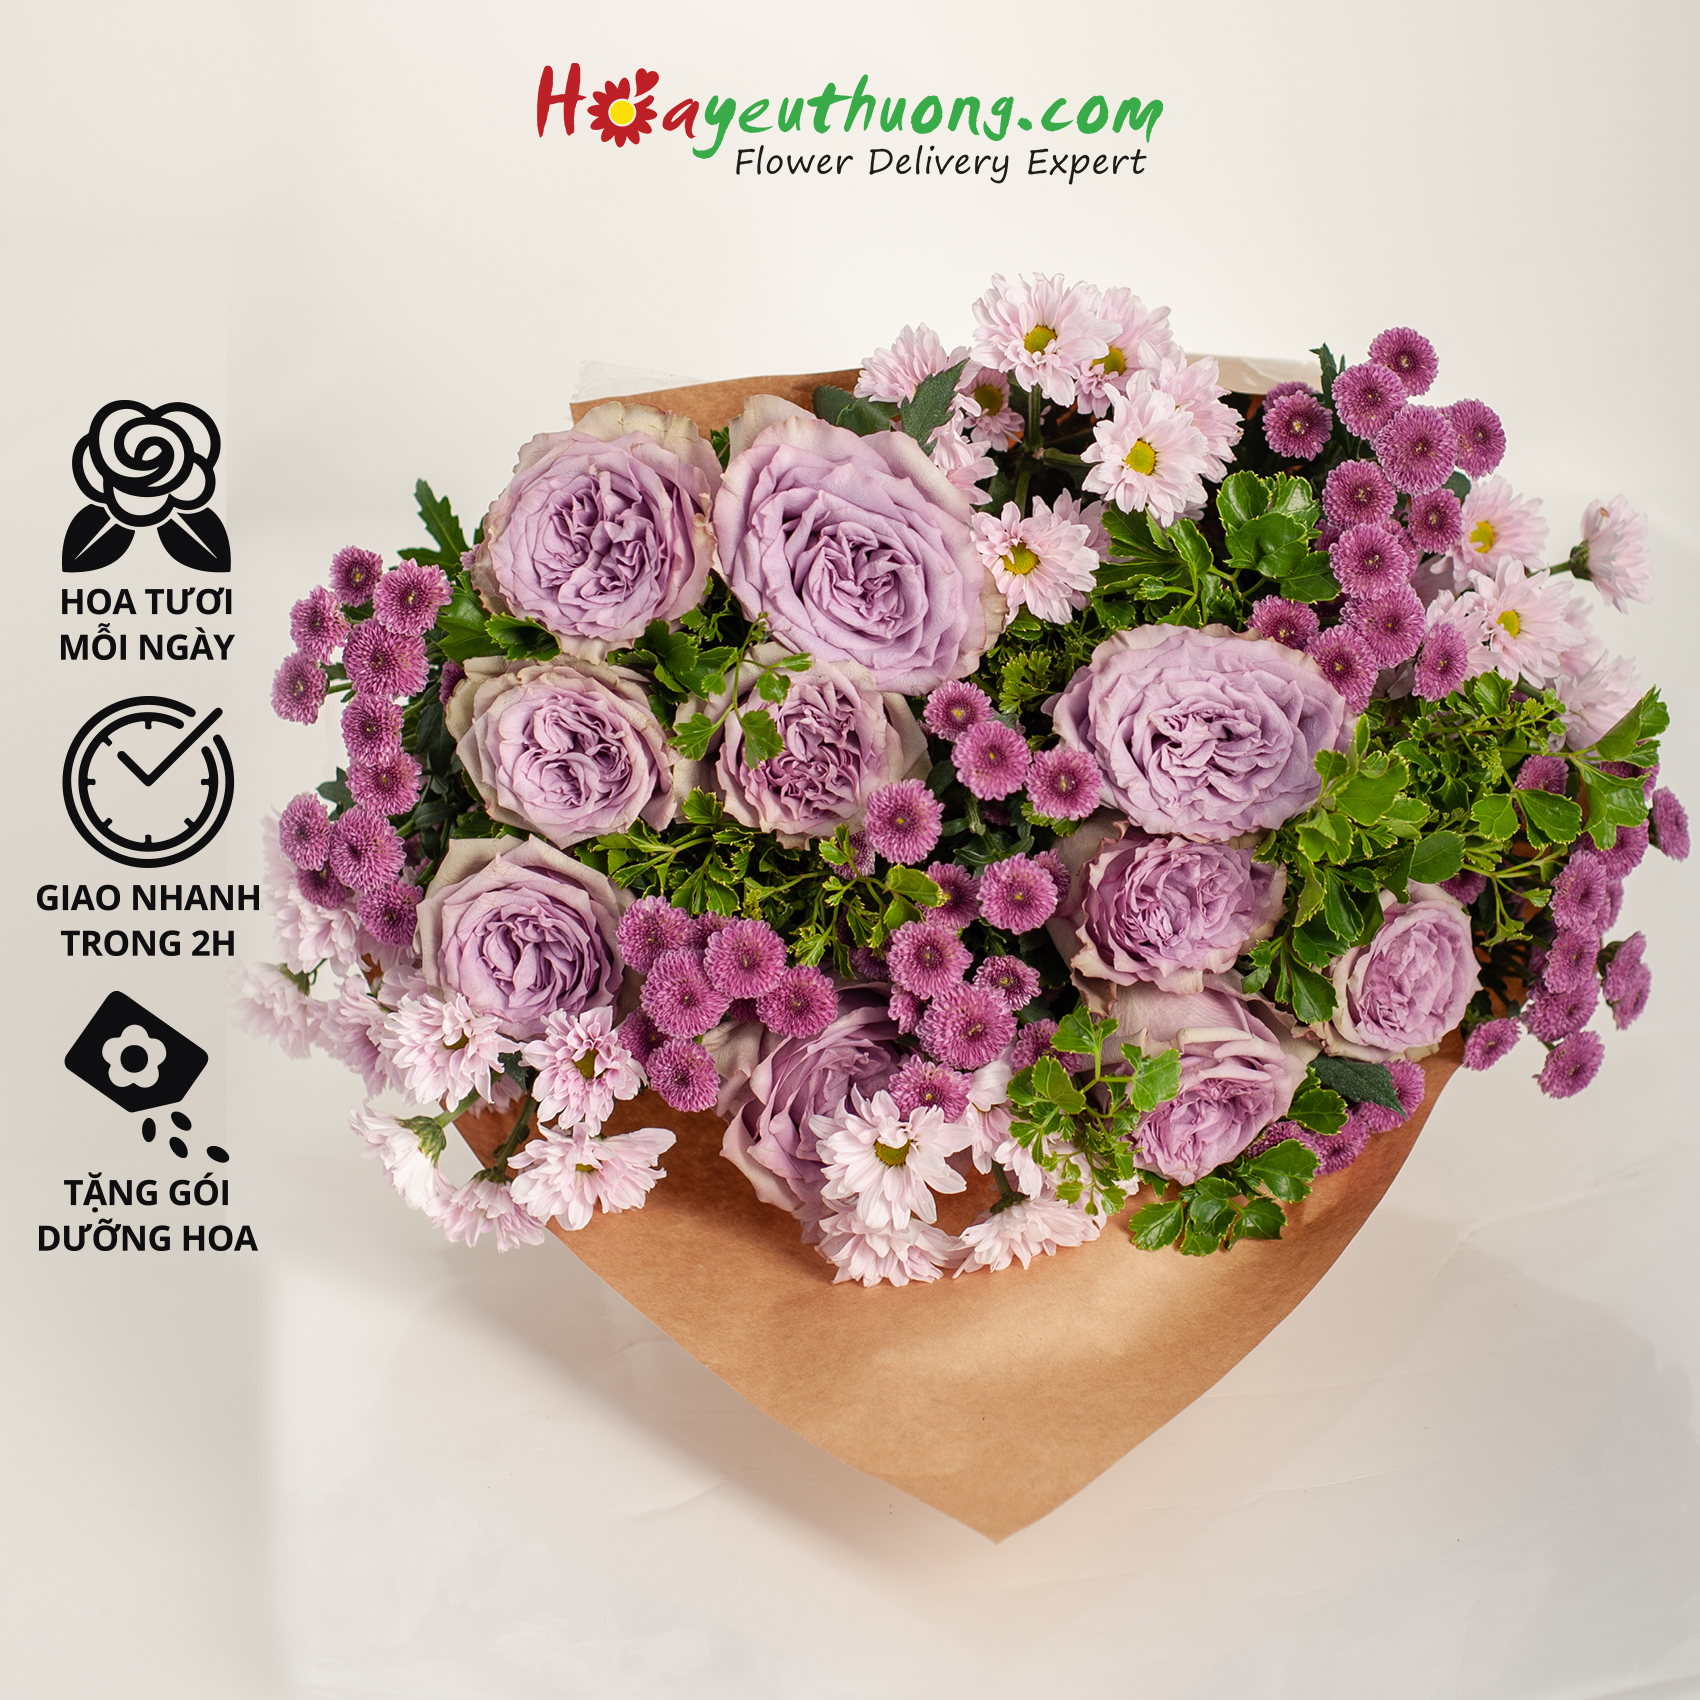 Màu Tím Lãng Mạn - Combo hoa mix sẵn Hoayeuthuong, hoa Đà Lạt tươi cắm trang trí nhà cửa, văn phòng